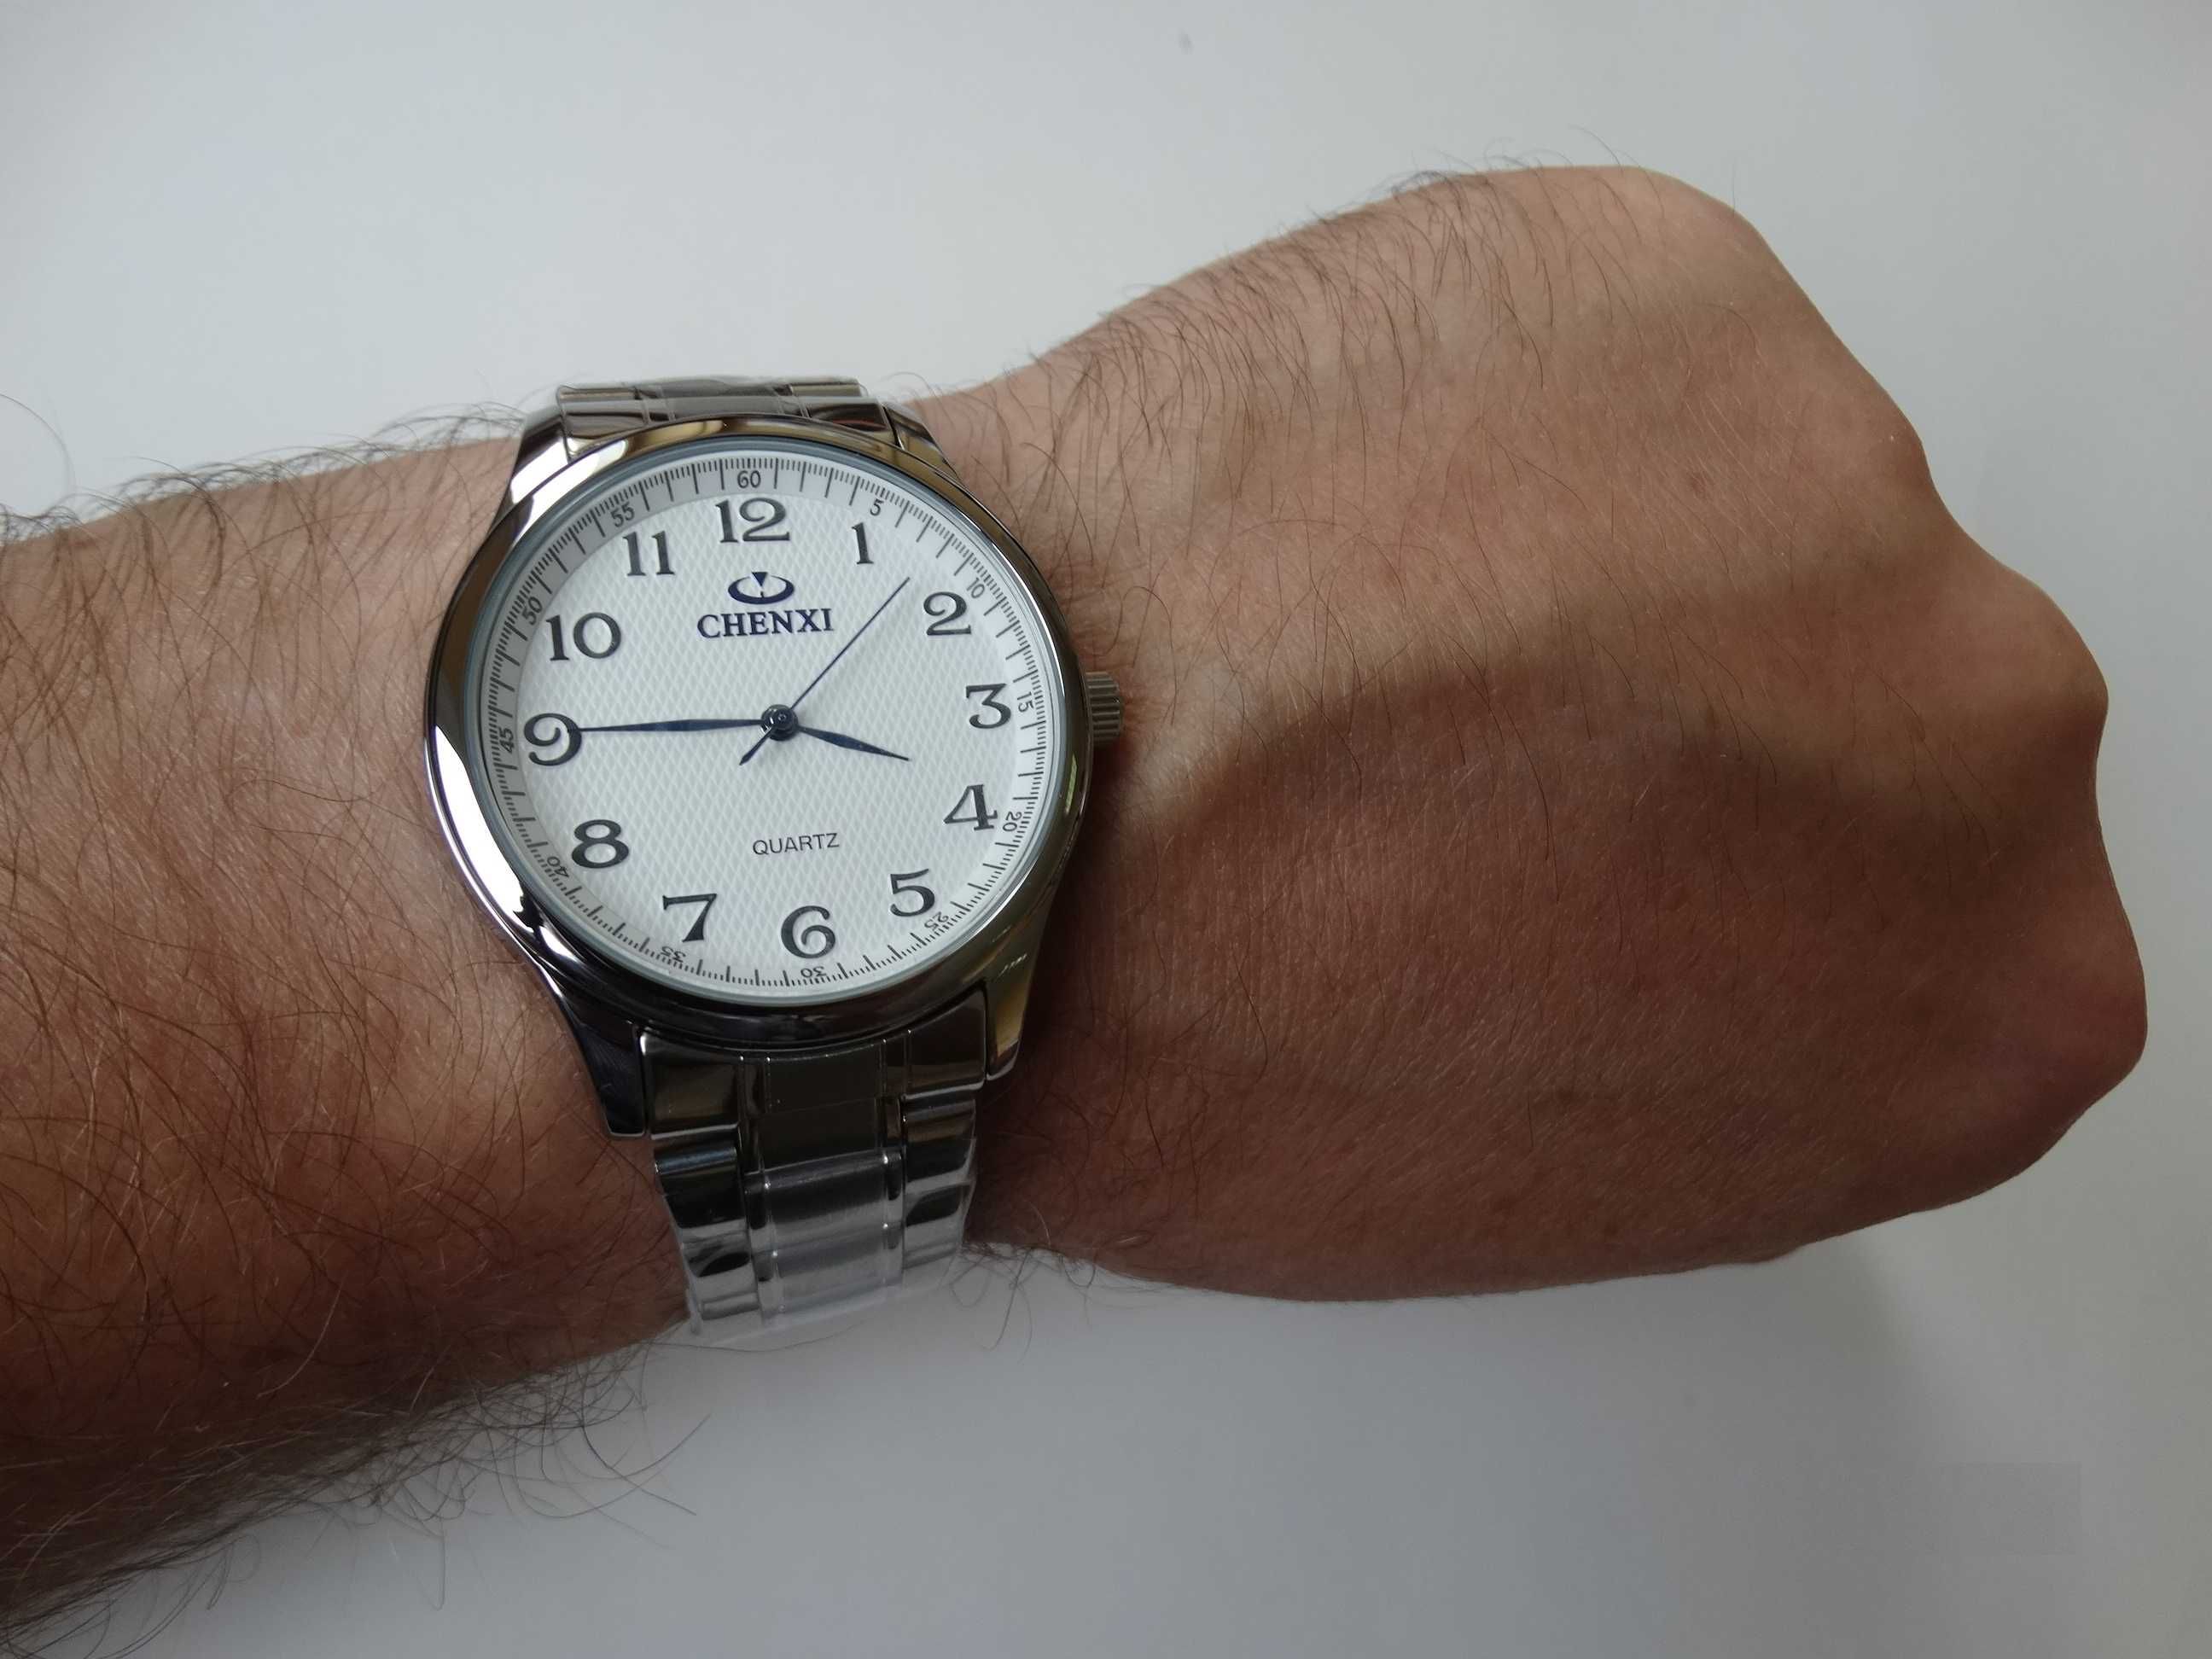 Zegarek męski klasyczny z bransoletą stalową 20mm biała tarcza kwarcow